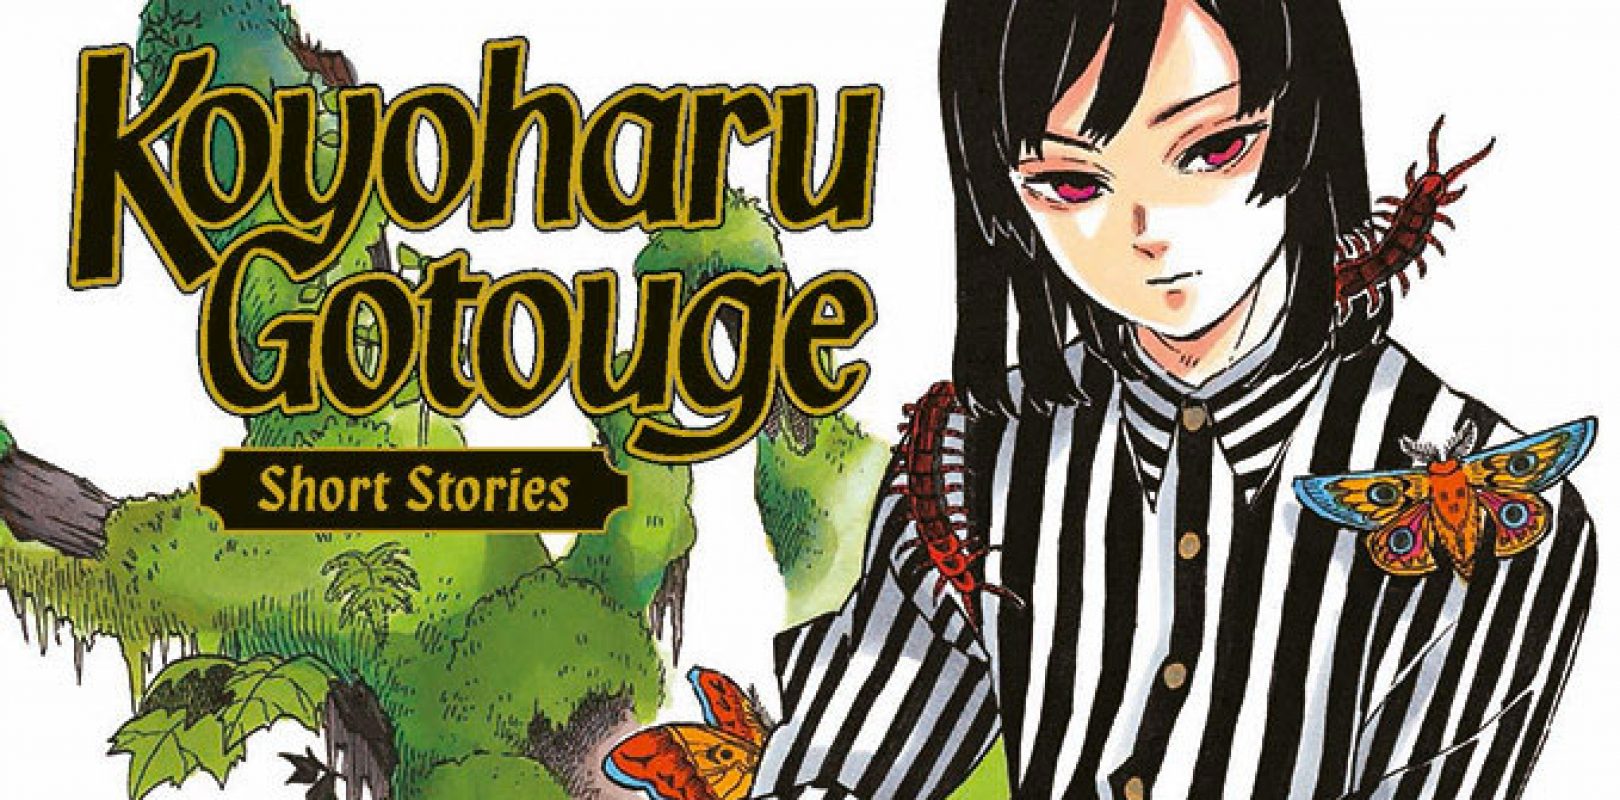 Koyoharu-Gotouge-Short-Stories-Koyoharu-Gotouge